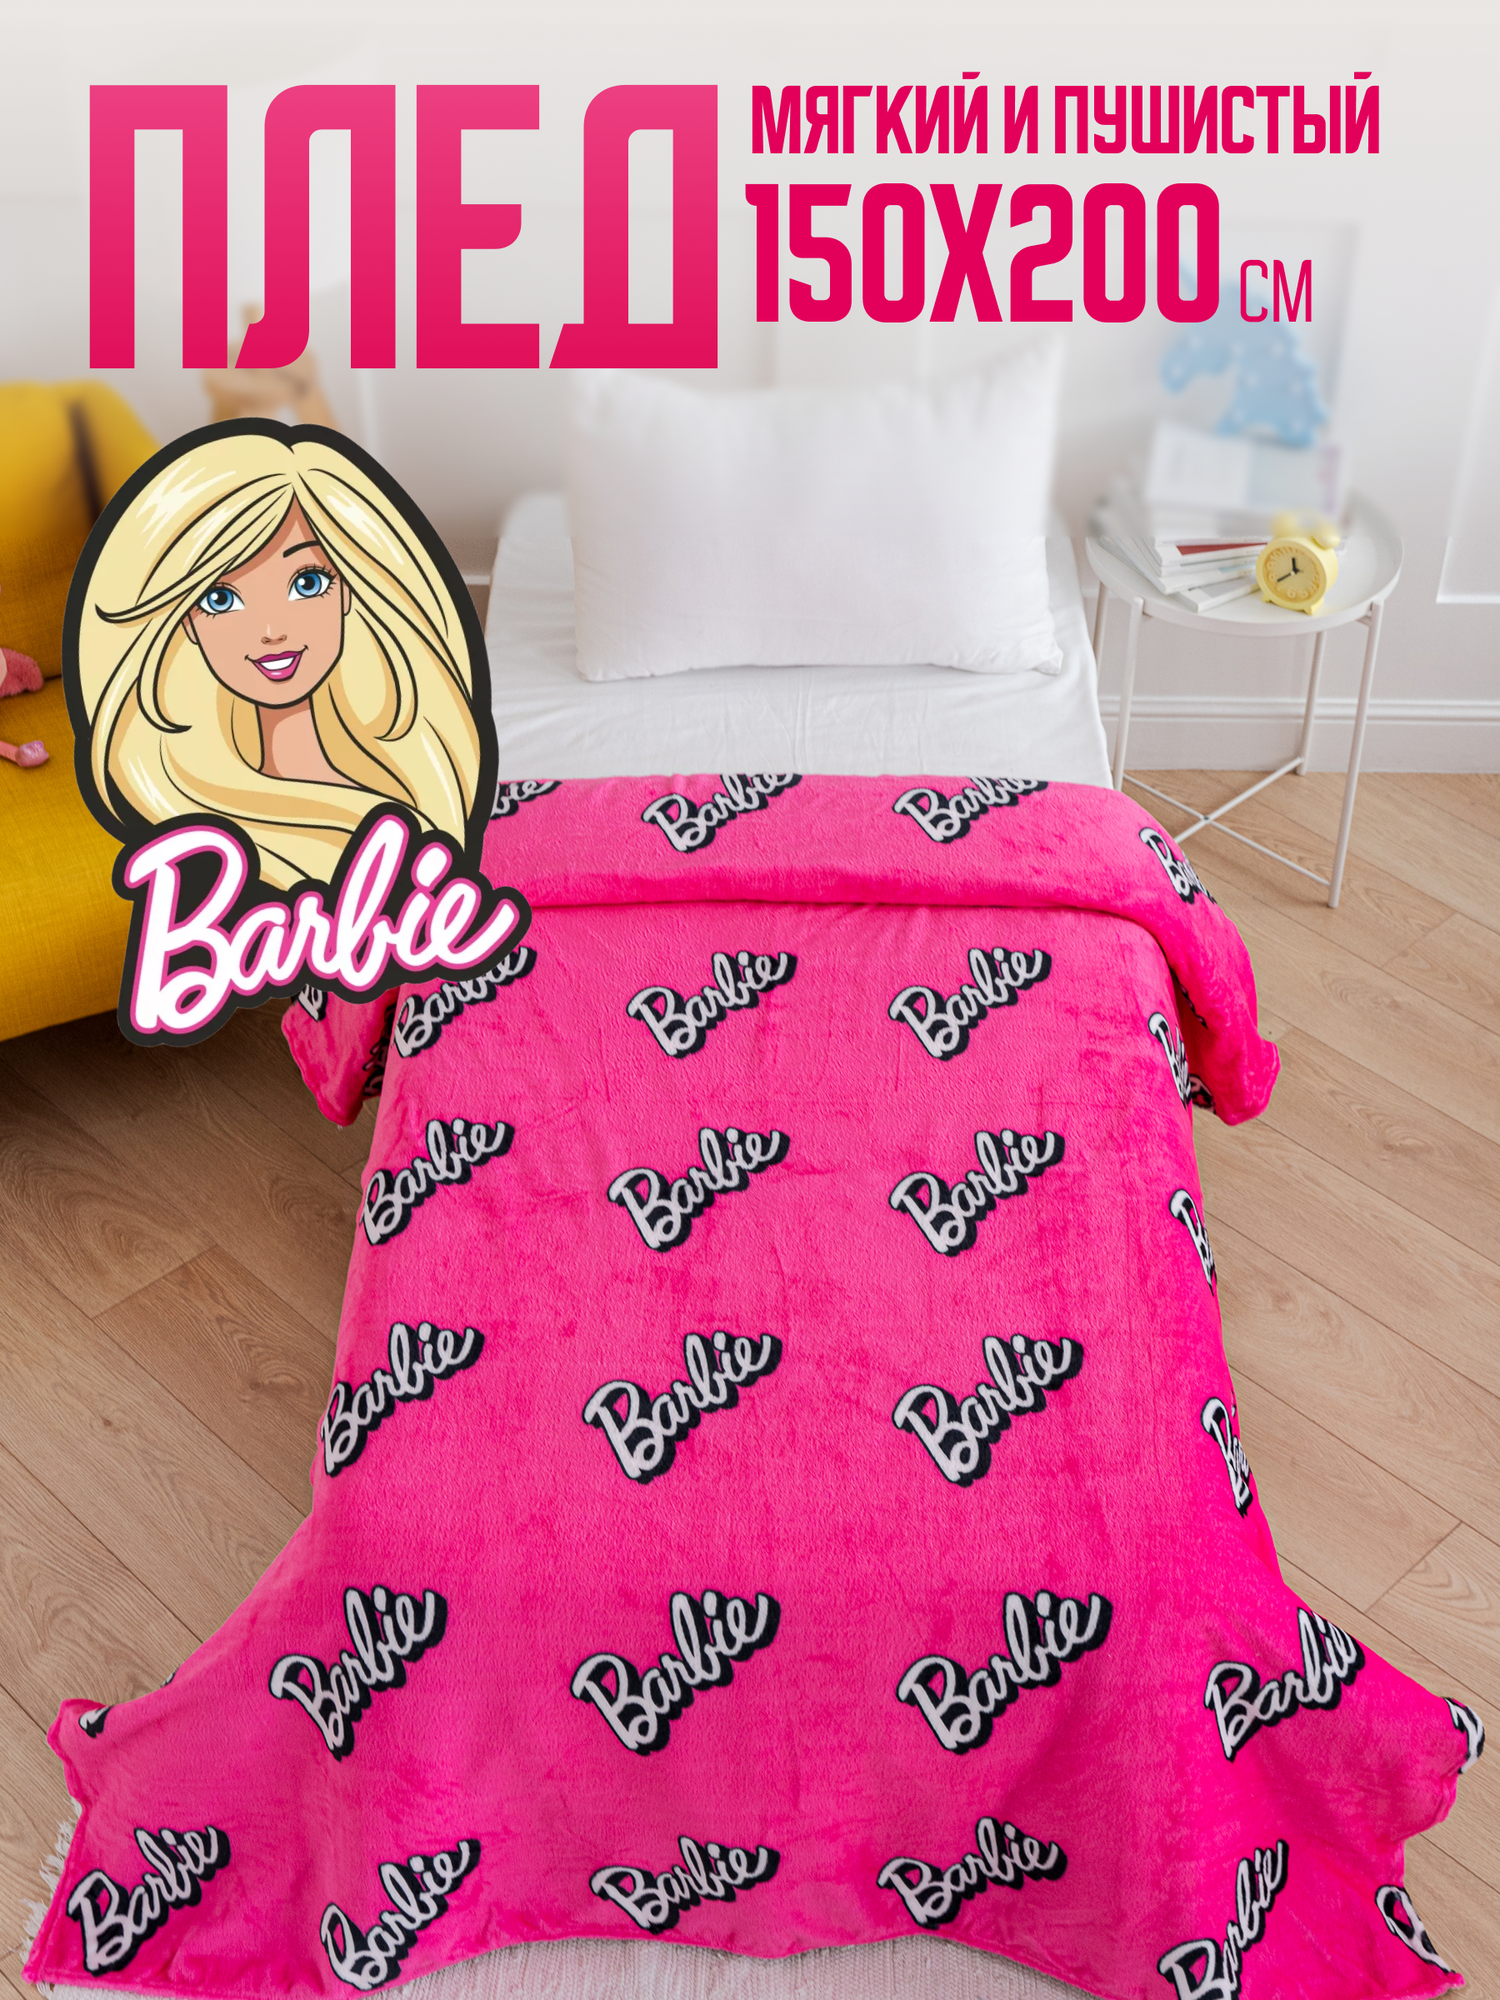 Плед 150х200 Павлинка Barbie/Барби, 1.5 спальный, полуторный, розовый